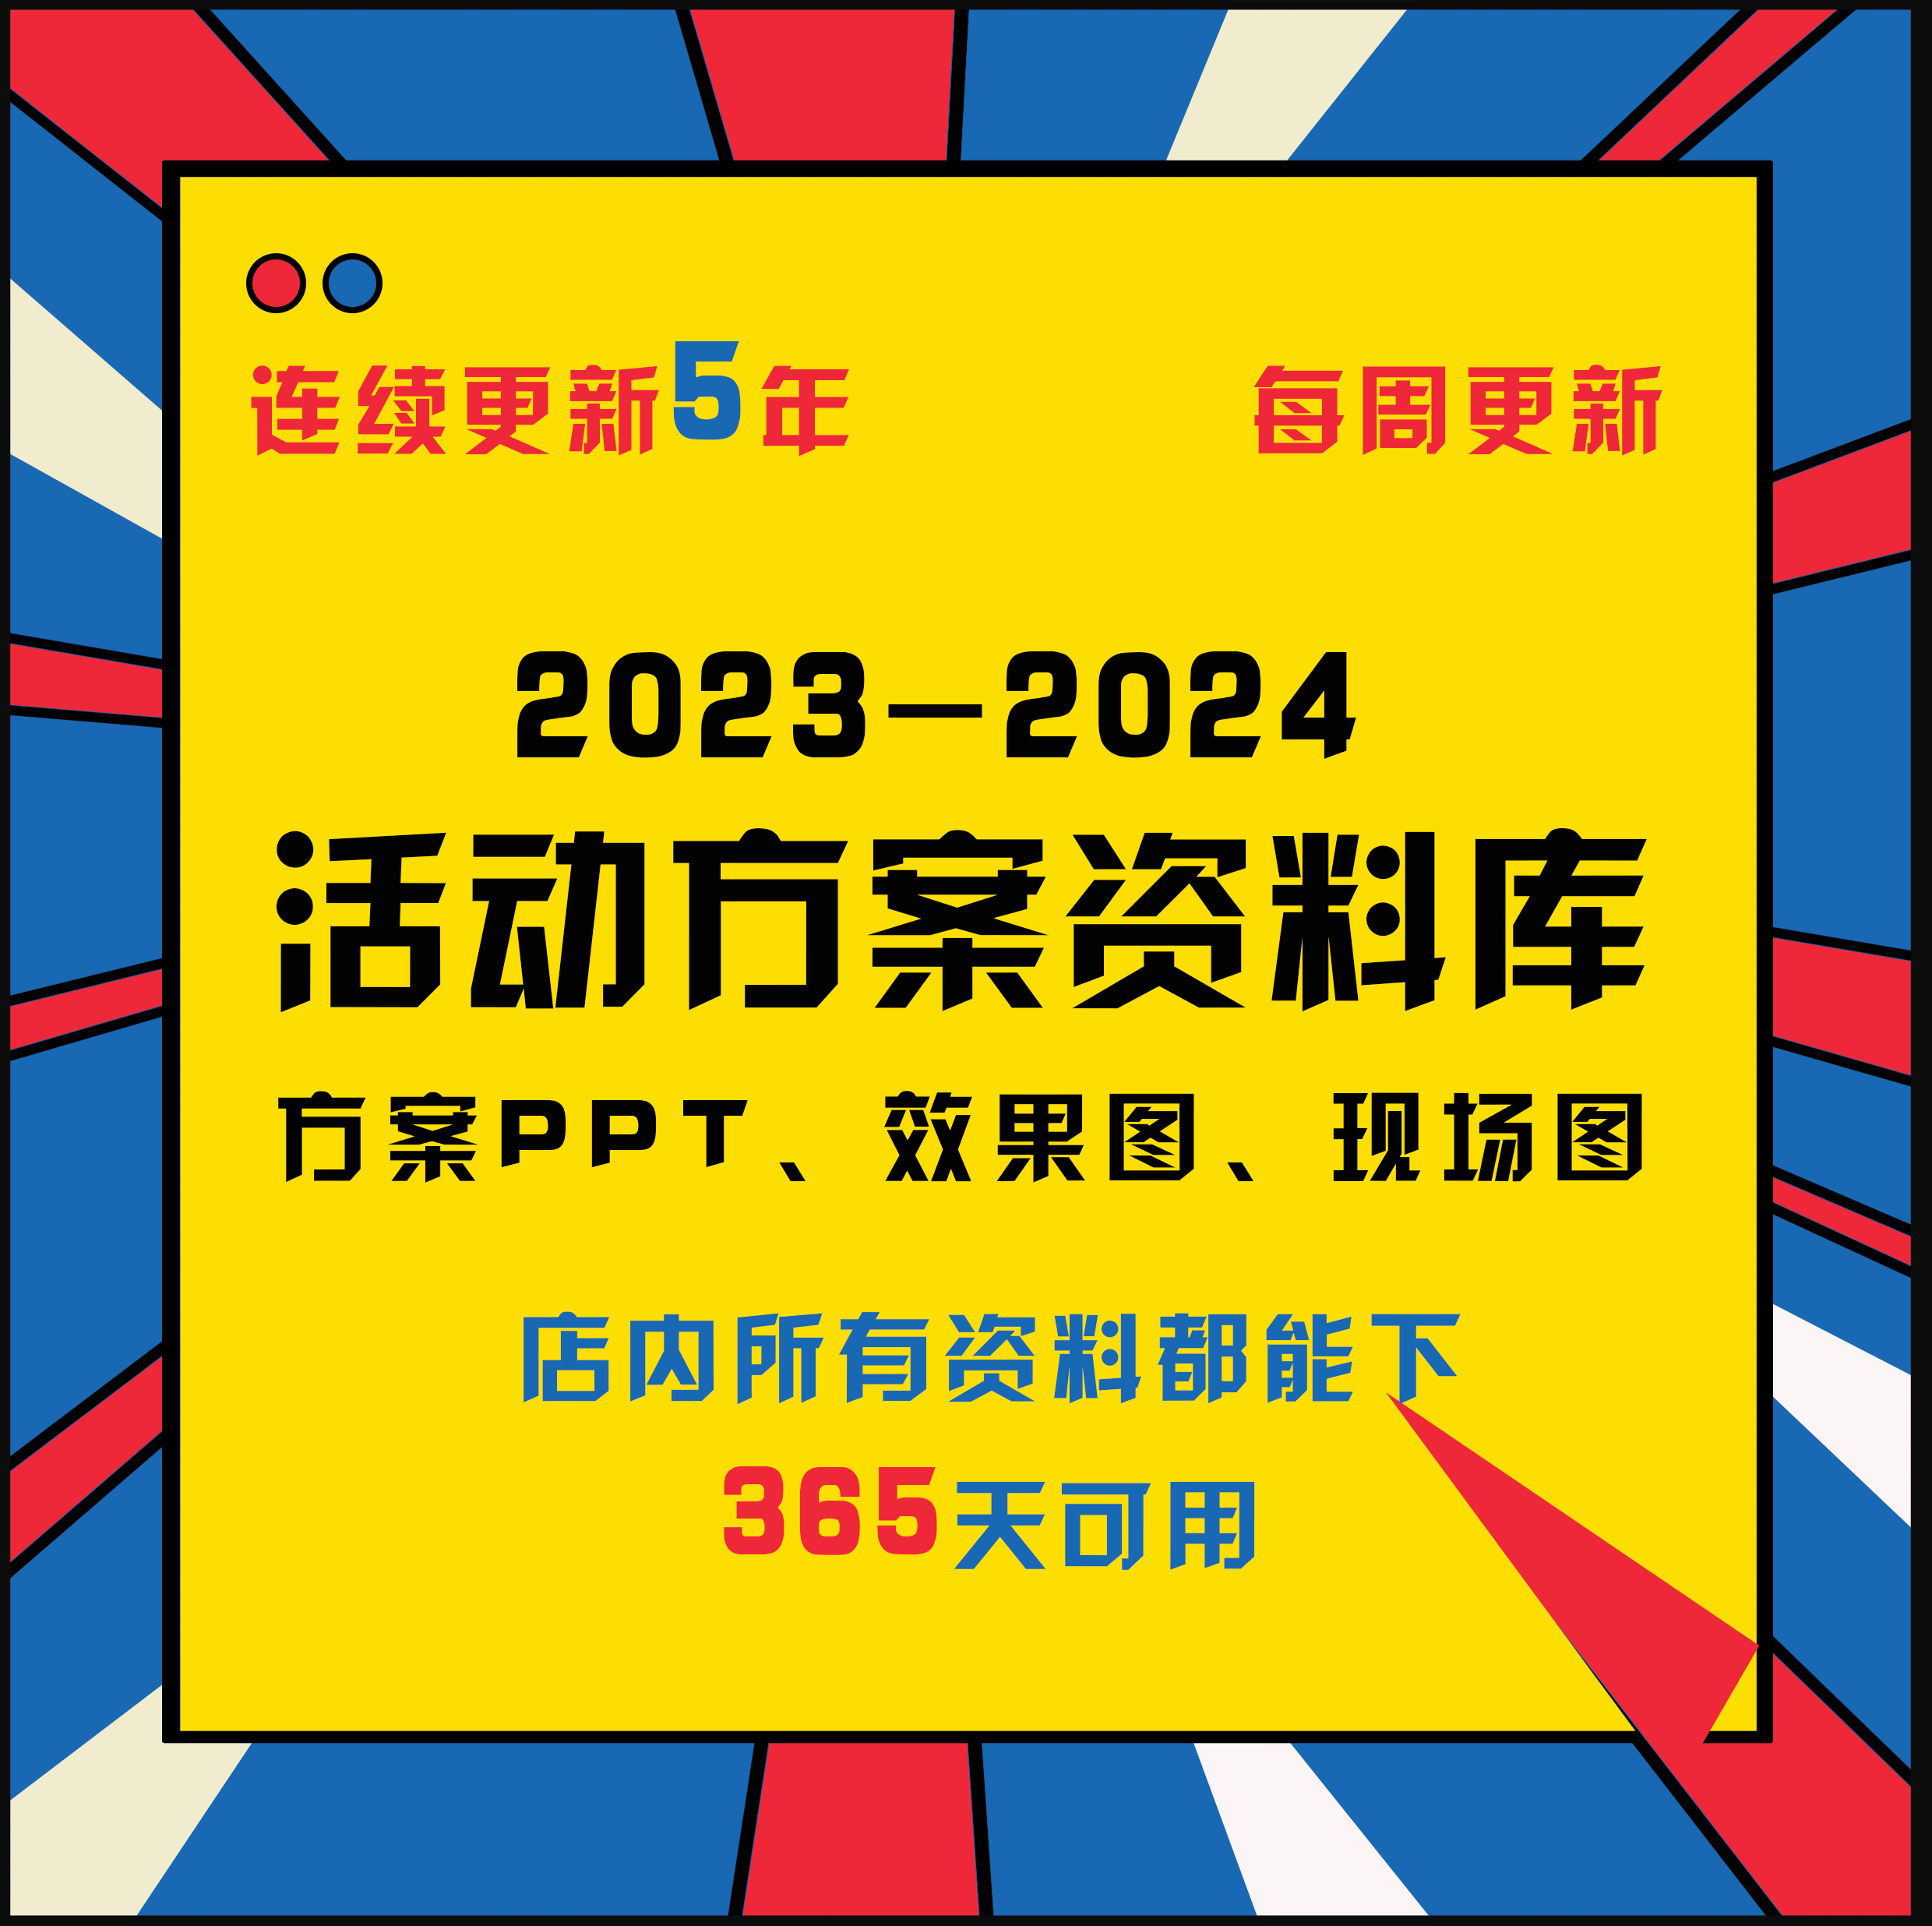 2023-2024年新广告公关活动策划传播方案ppt美陈布置现场图效果图